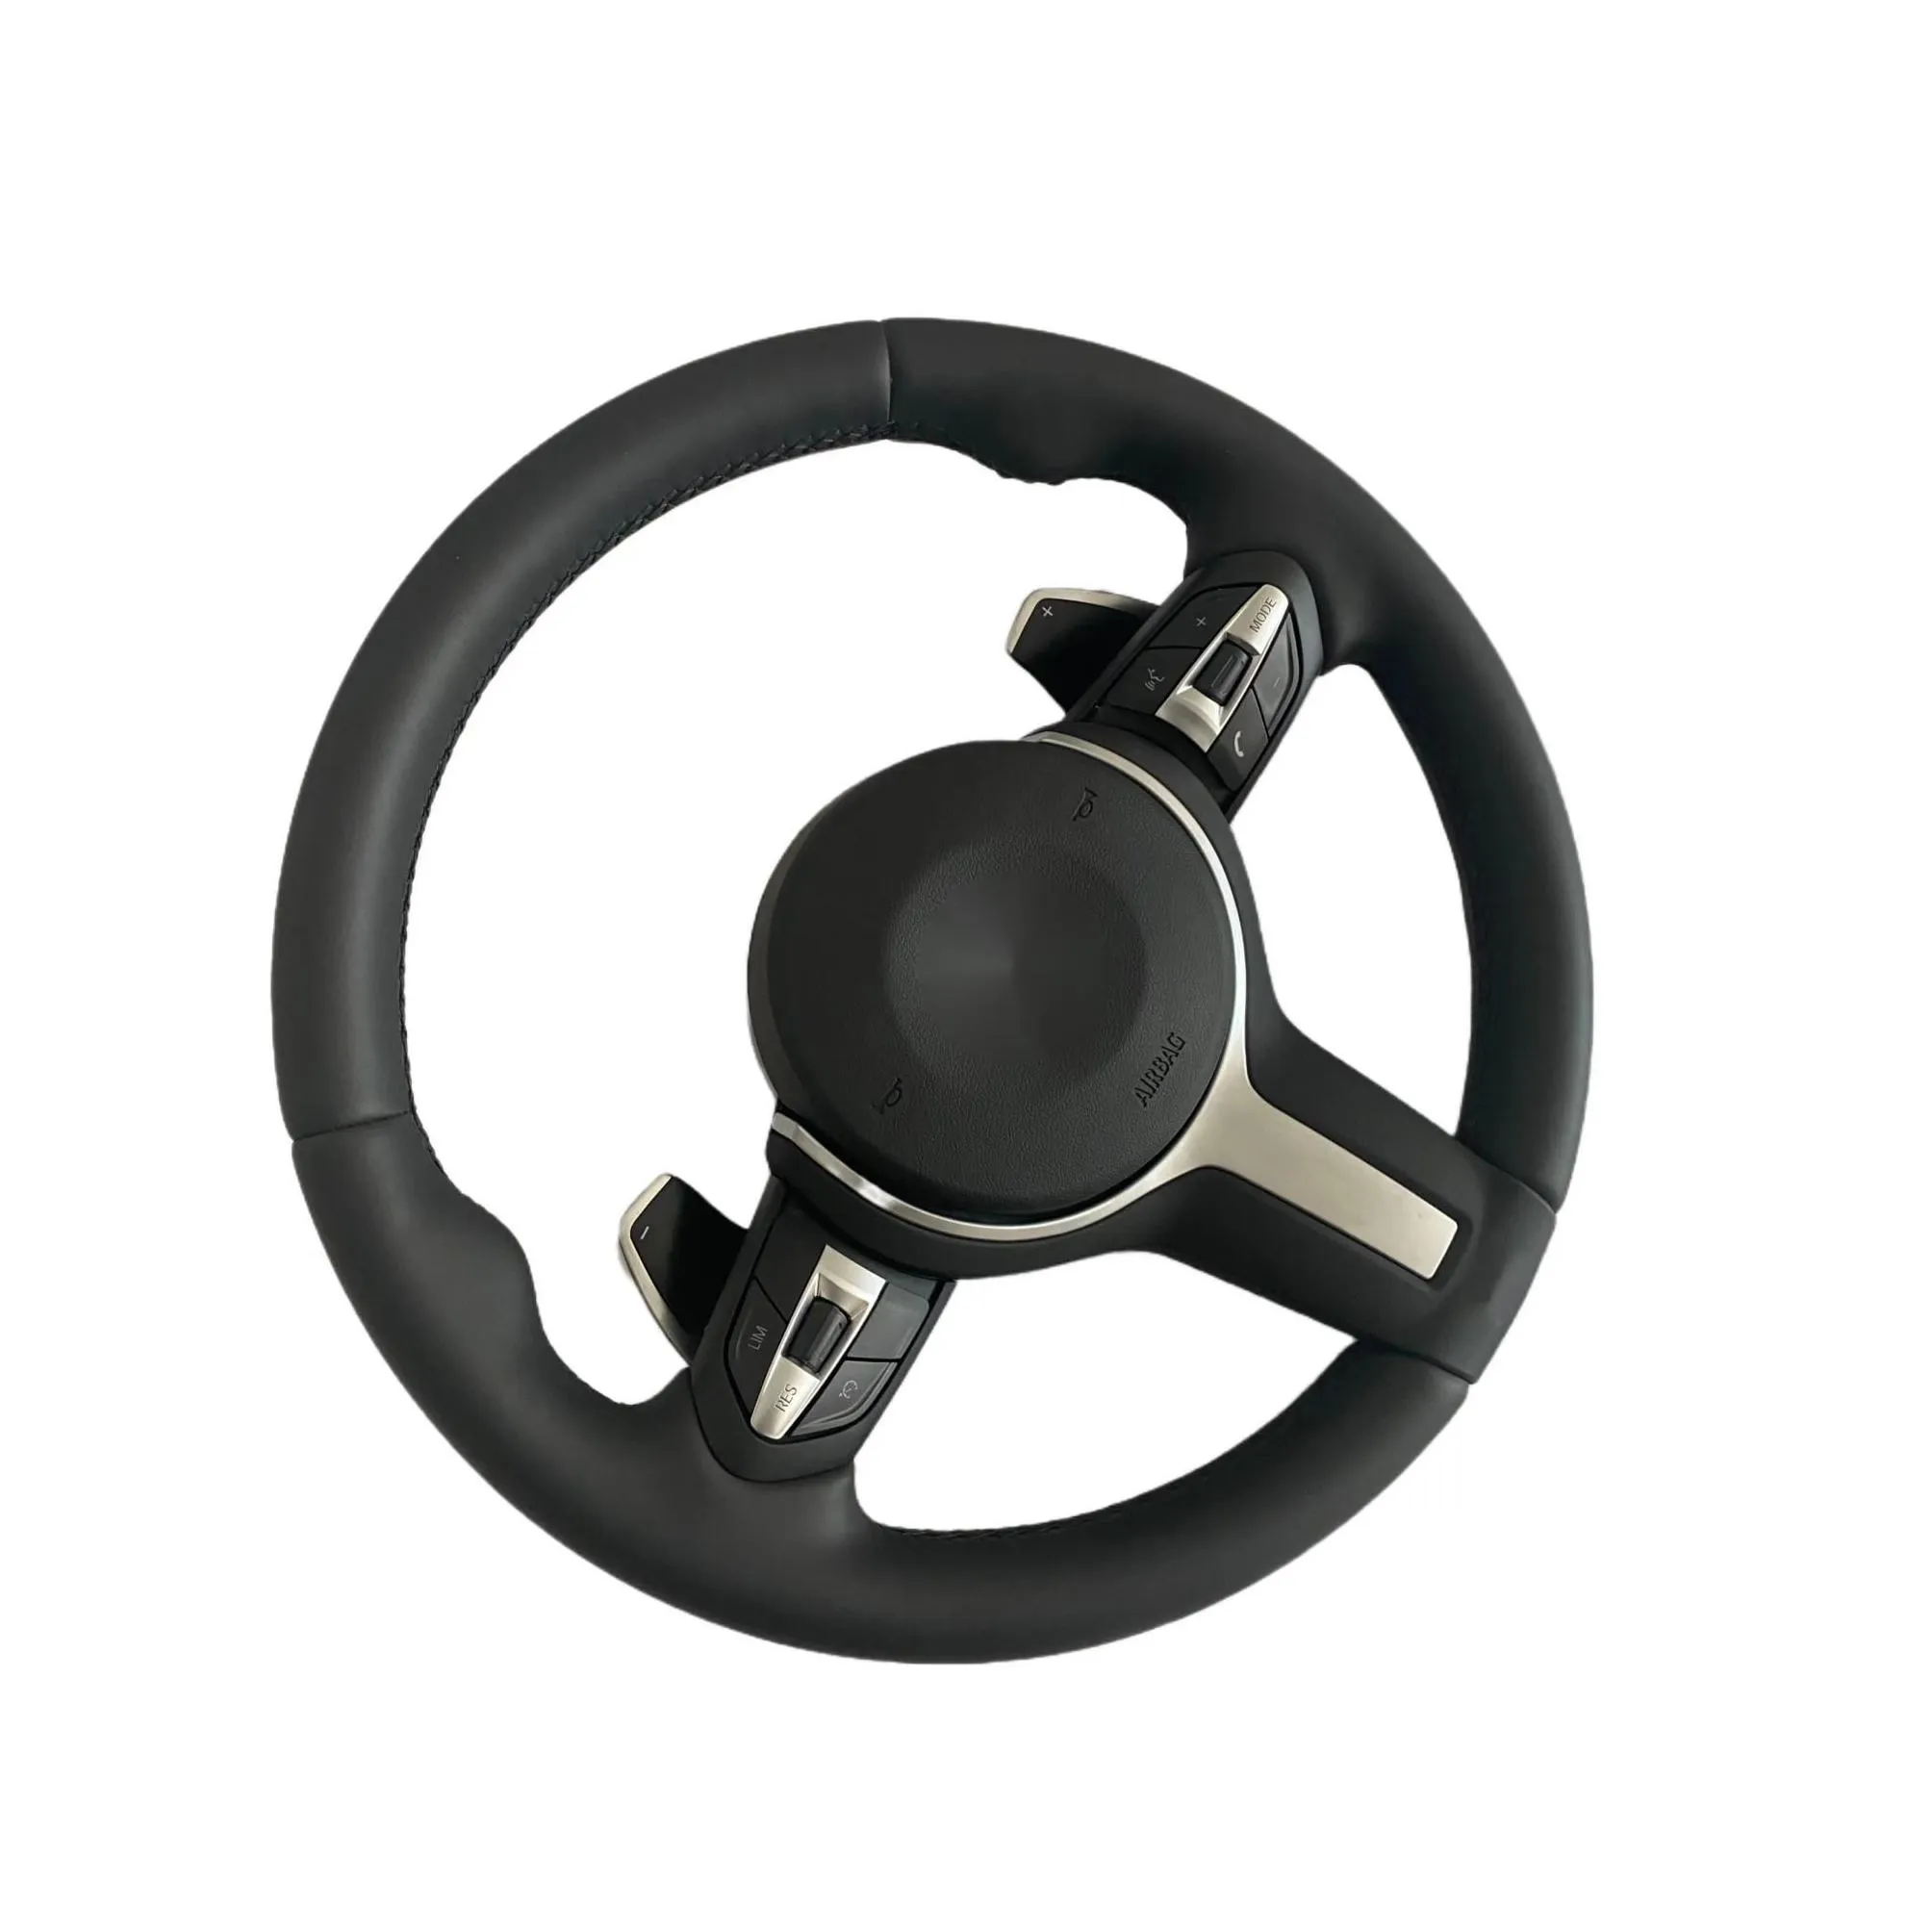 m steering wheel for bmw f01 f02 f06 f07 f10 f11 f12 f13 f14 f15 f18 f22 f30 f31 f32 f33 f34 f80 f82 f83 f85 f86 f87 x3 x4 x5